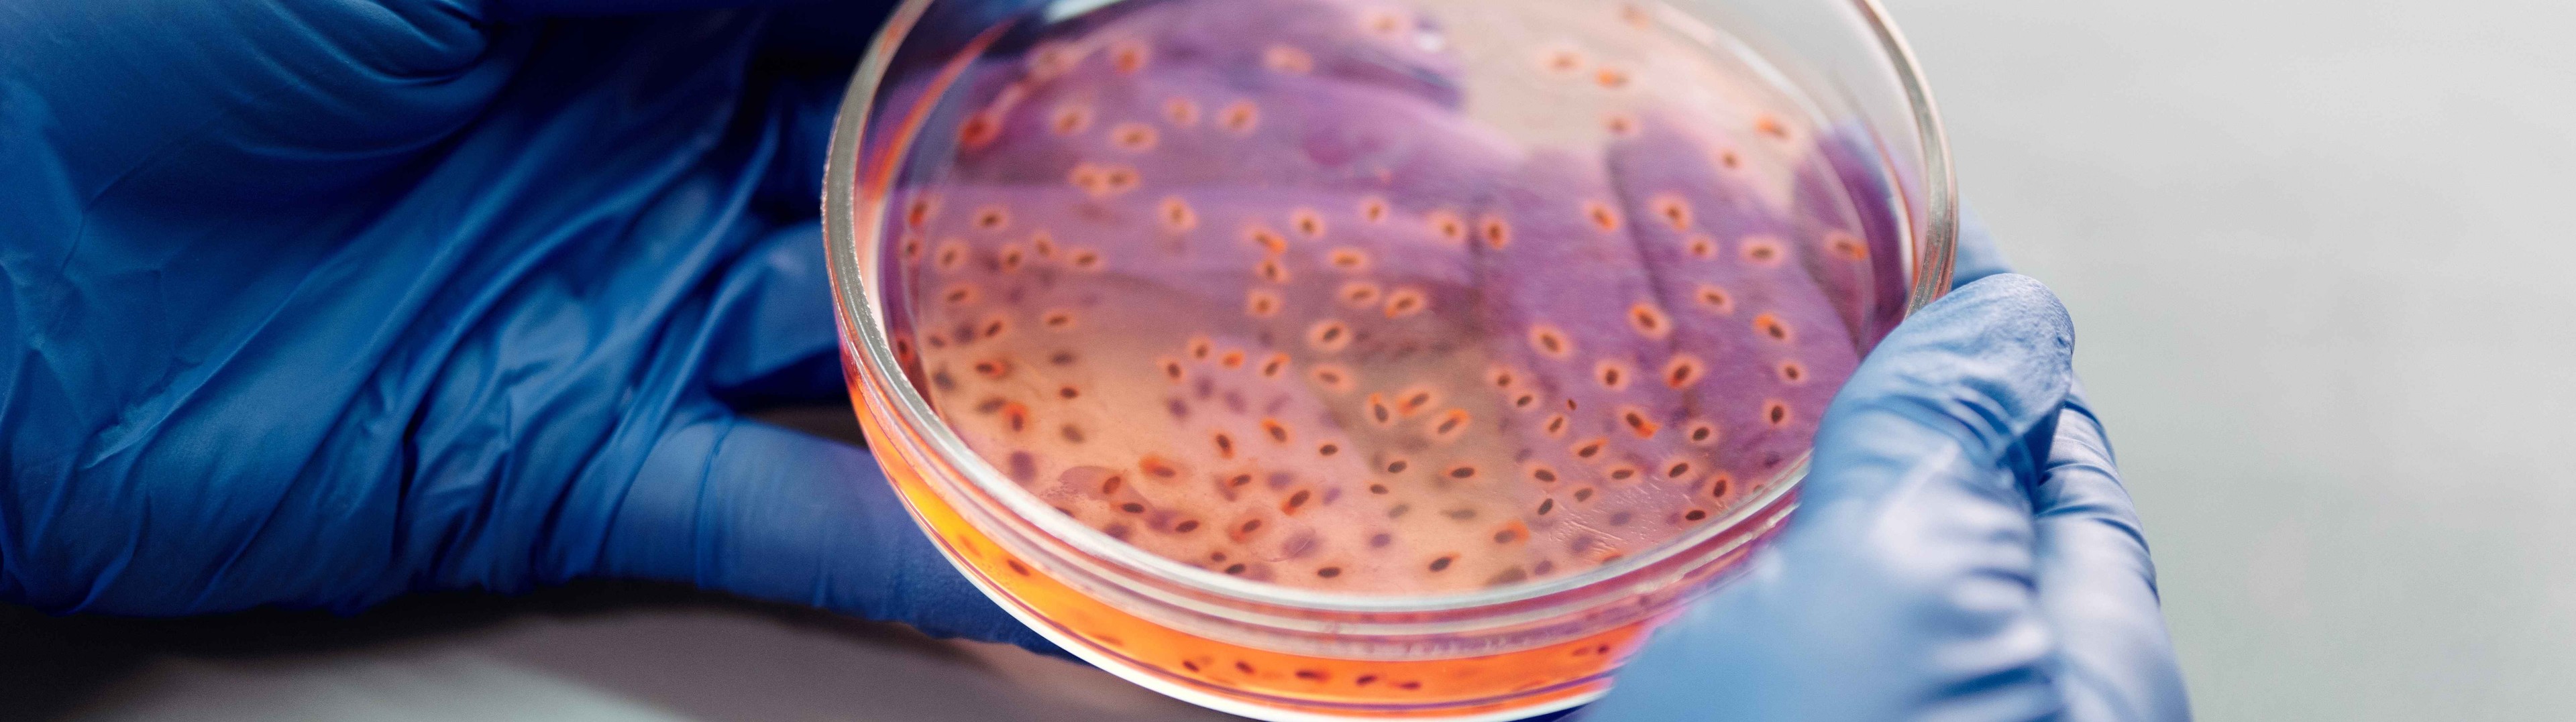 Descubren un nuevo fármaco  capaz de combatir 300 bacterias resistentes a medicamentos 